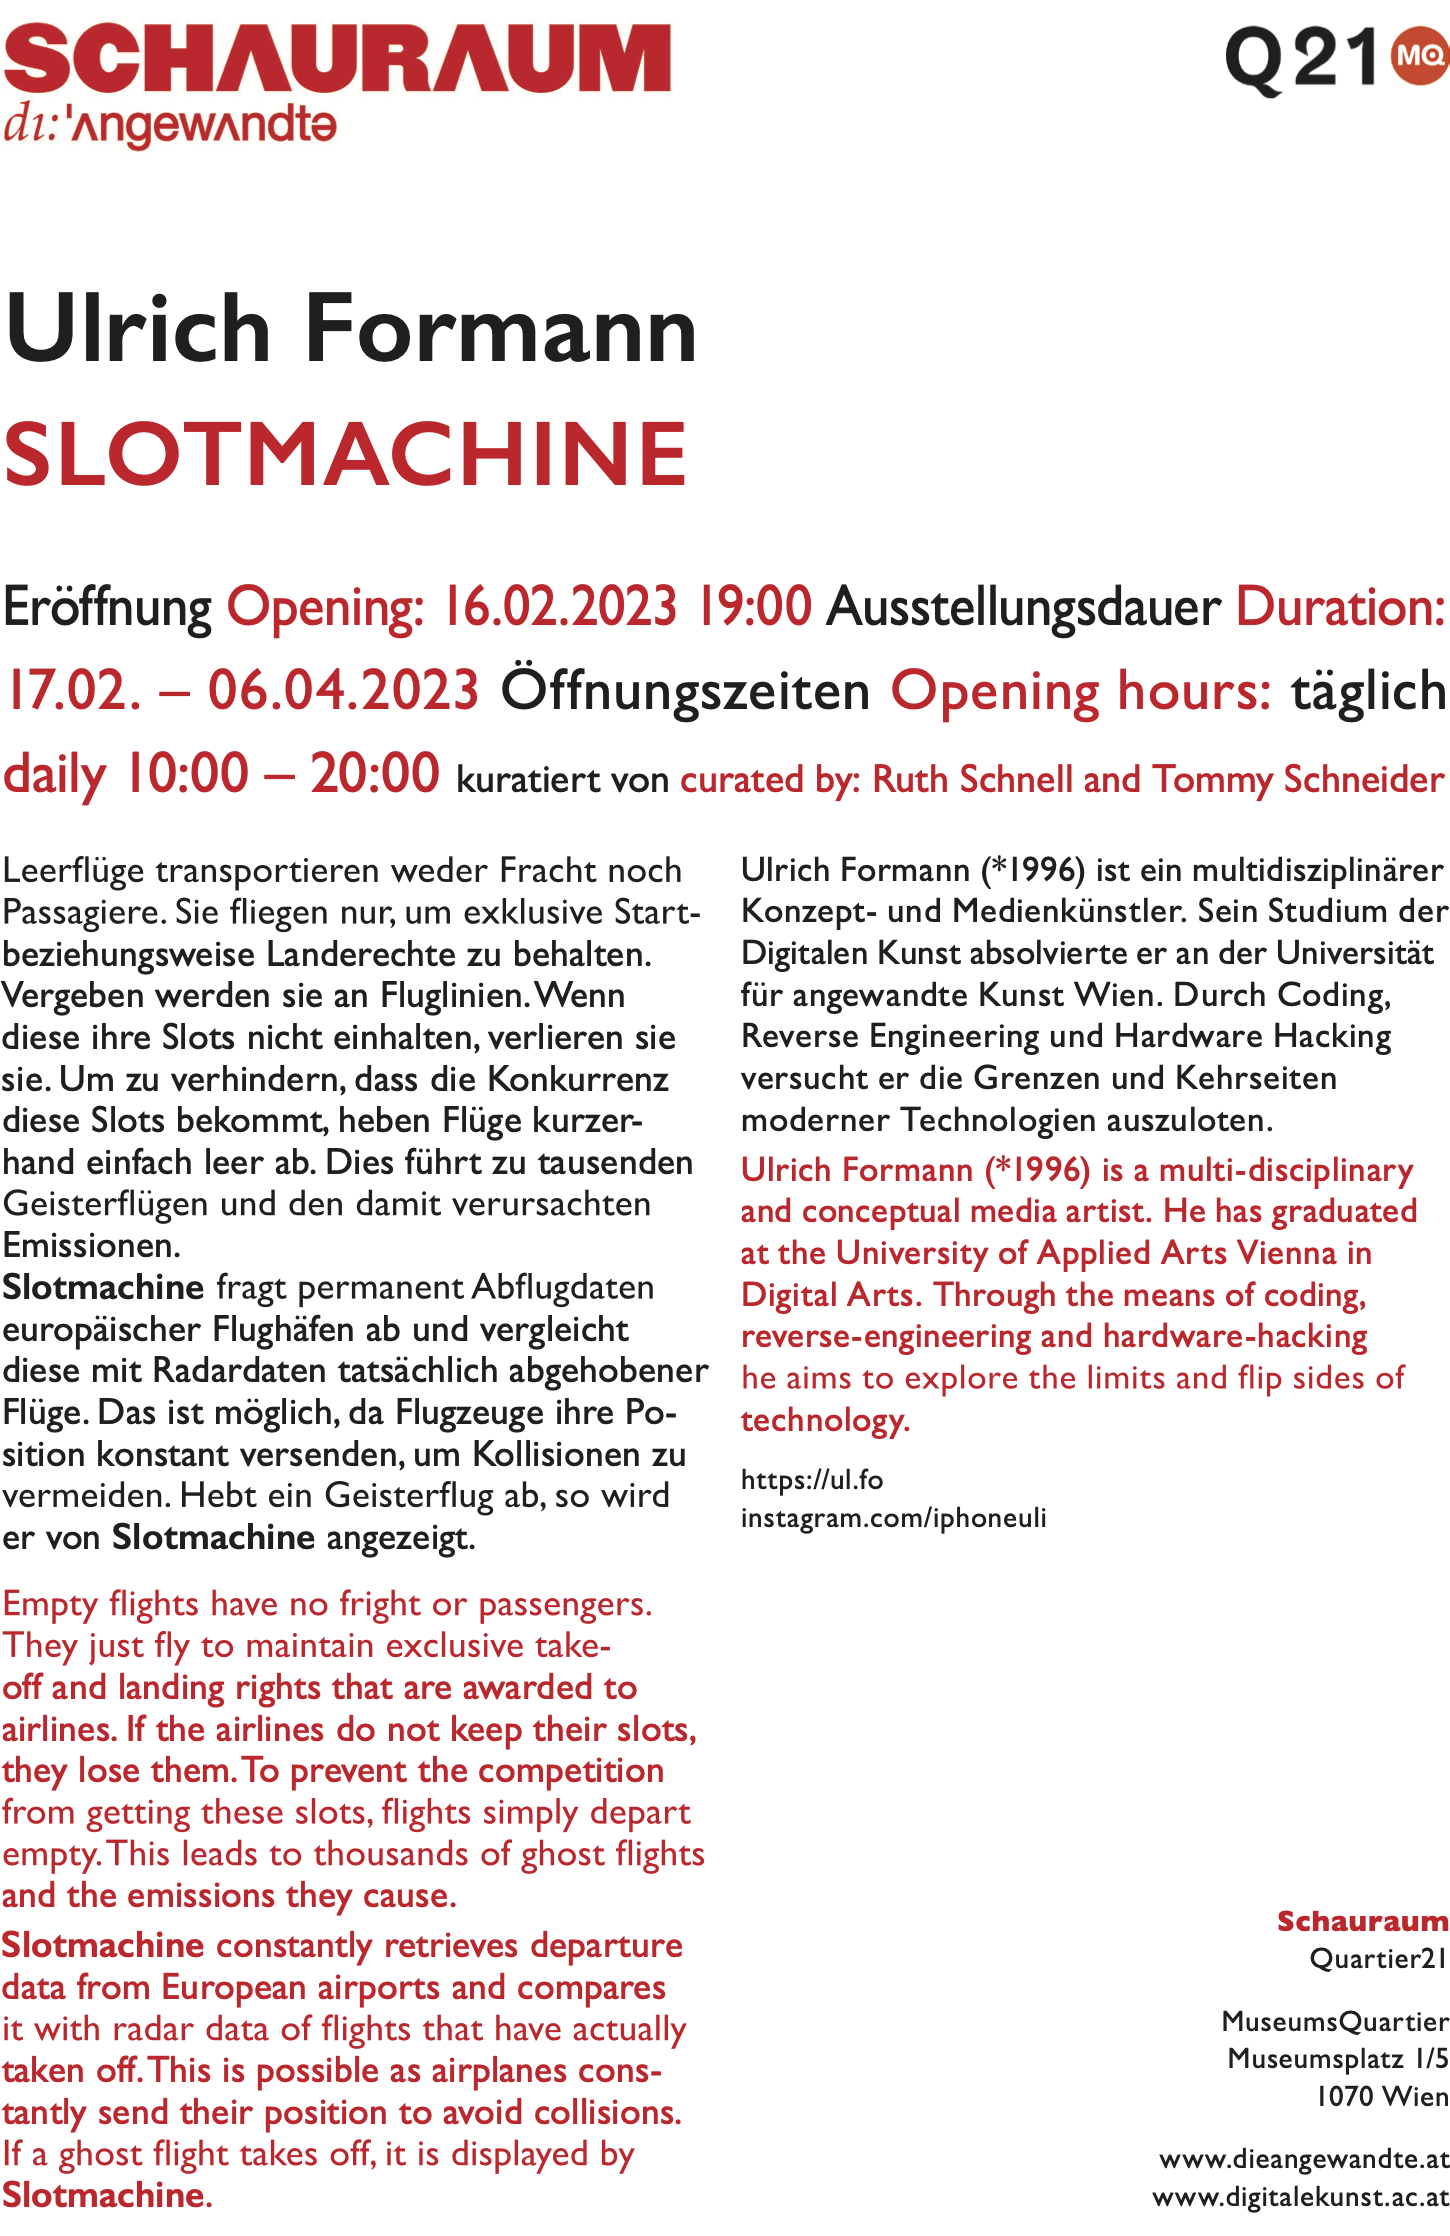 Schauraum Angewandte exhibition flyer